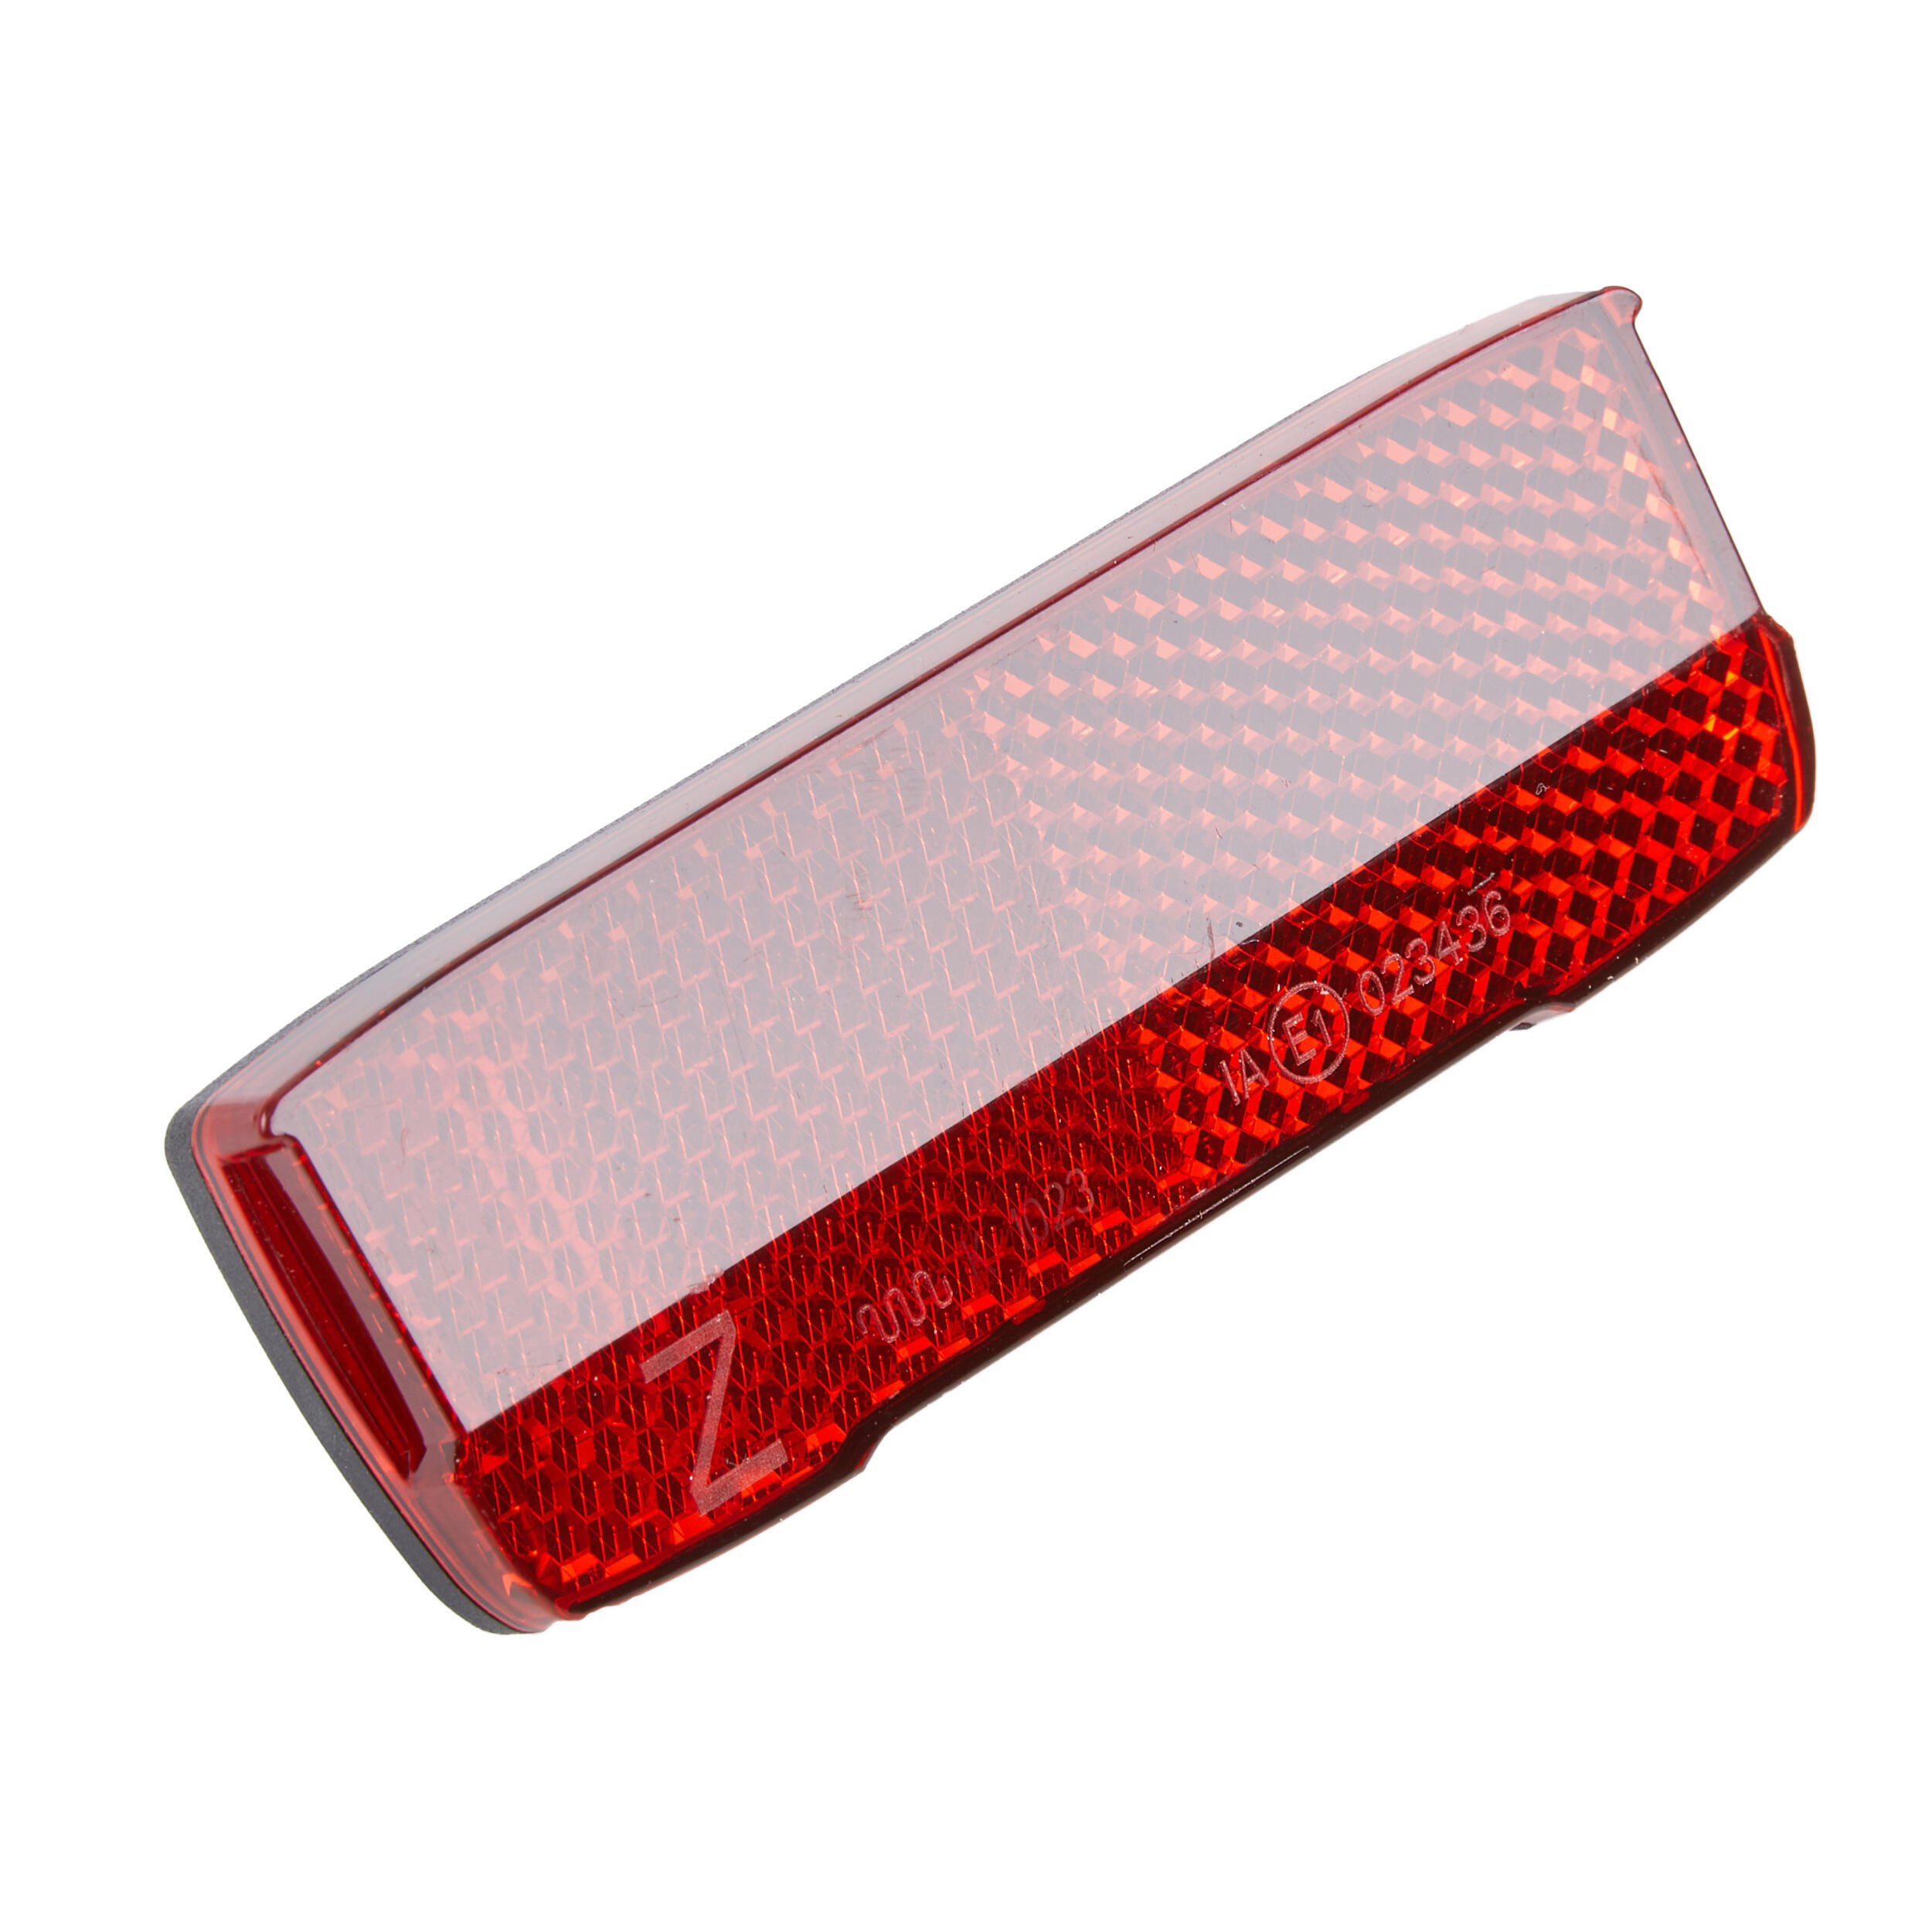 Отражатель для велосипеда Z-отражатель для багажника Elops, красный черный 50 шт компл красный белый отражатель интерьер совместимость предупреждающая табличка отражатель для грузовика